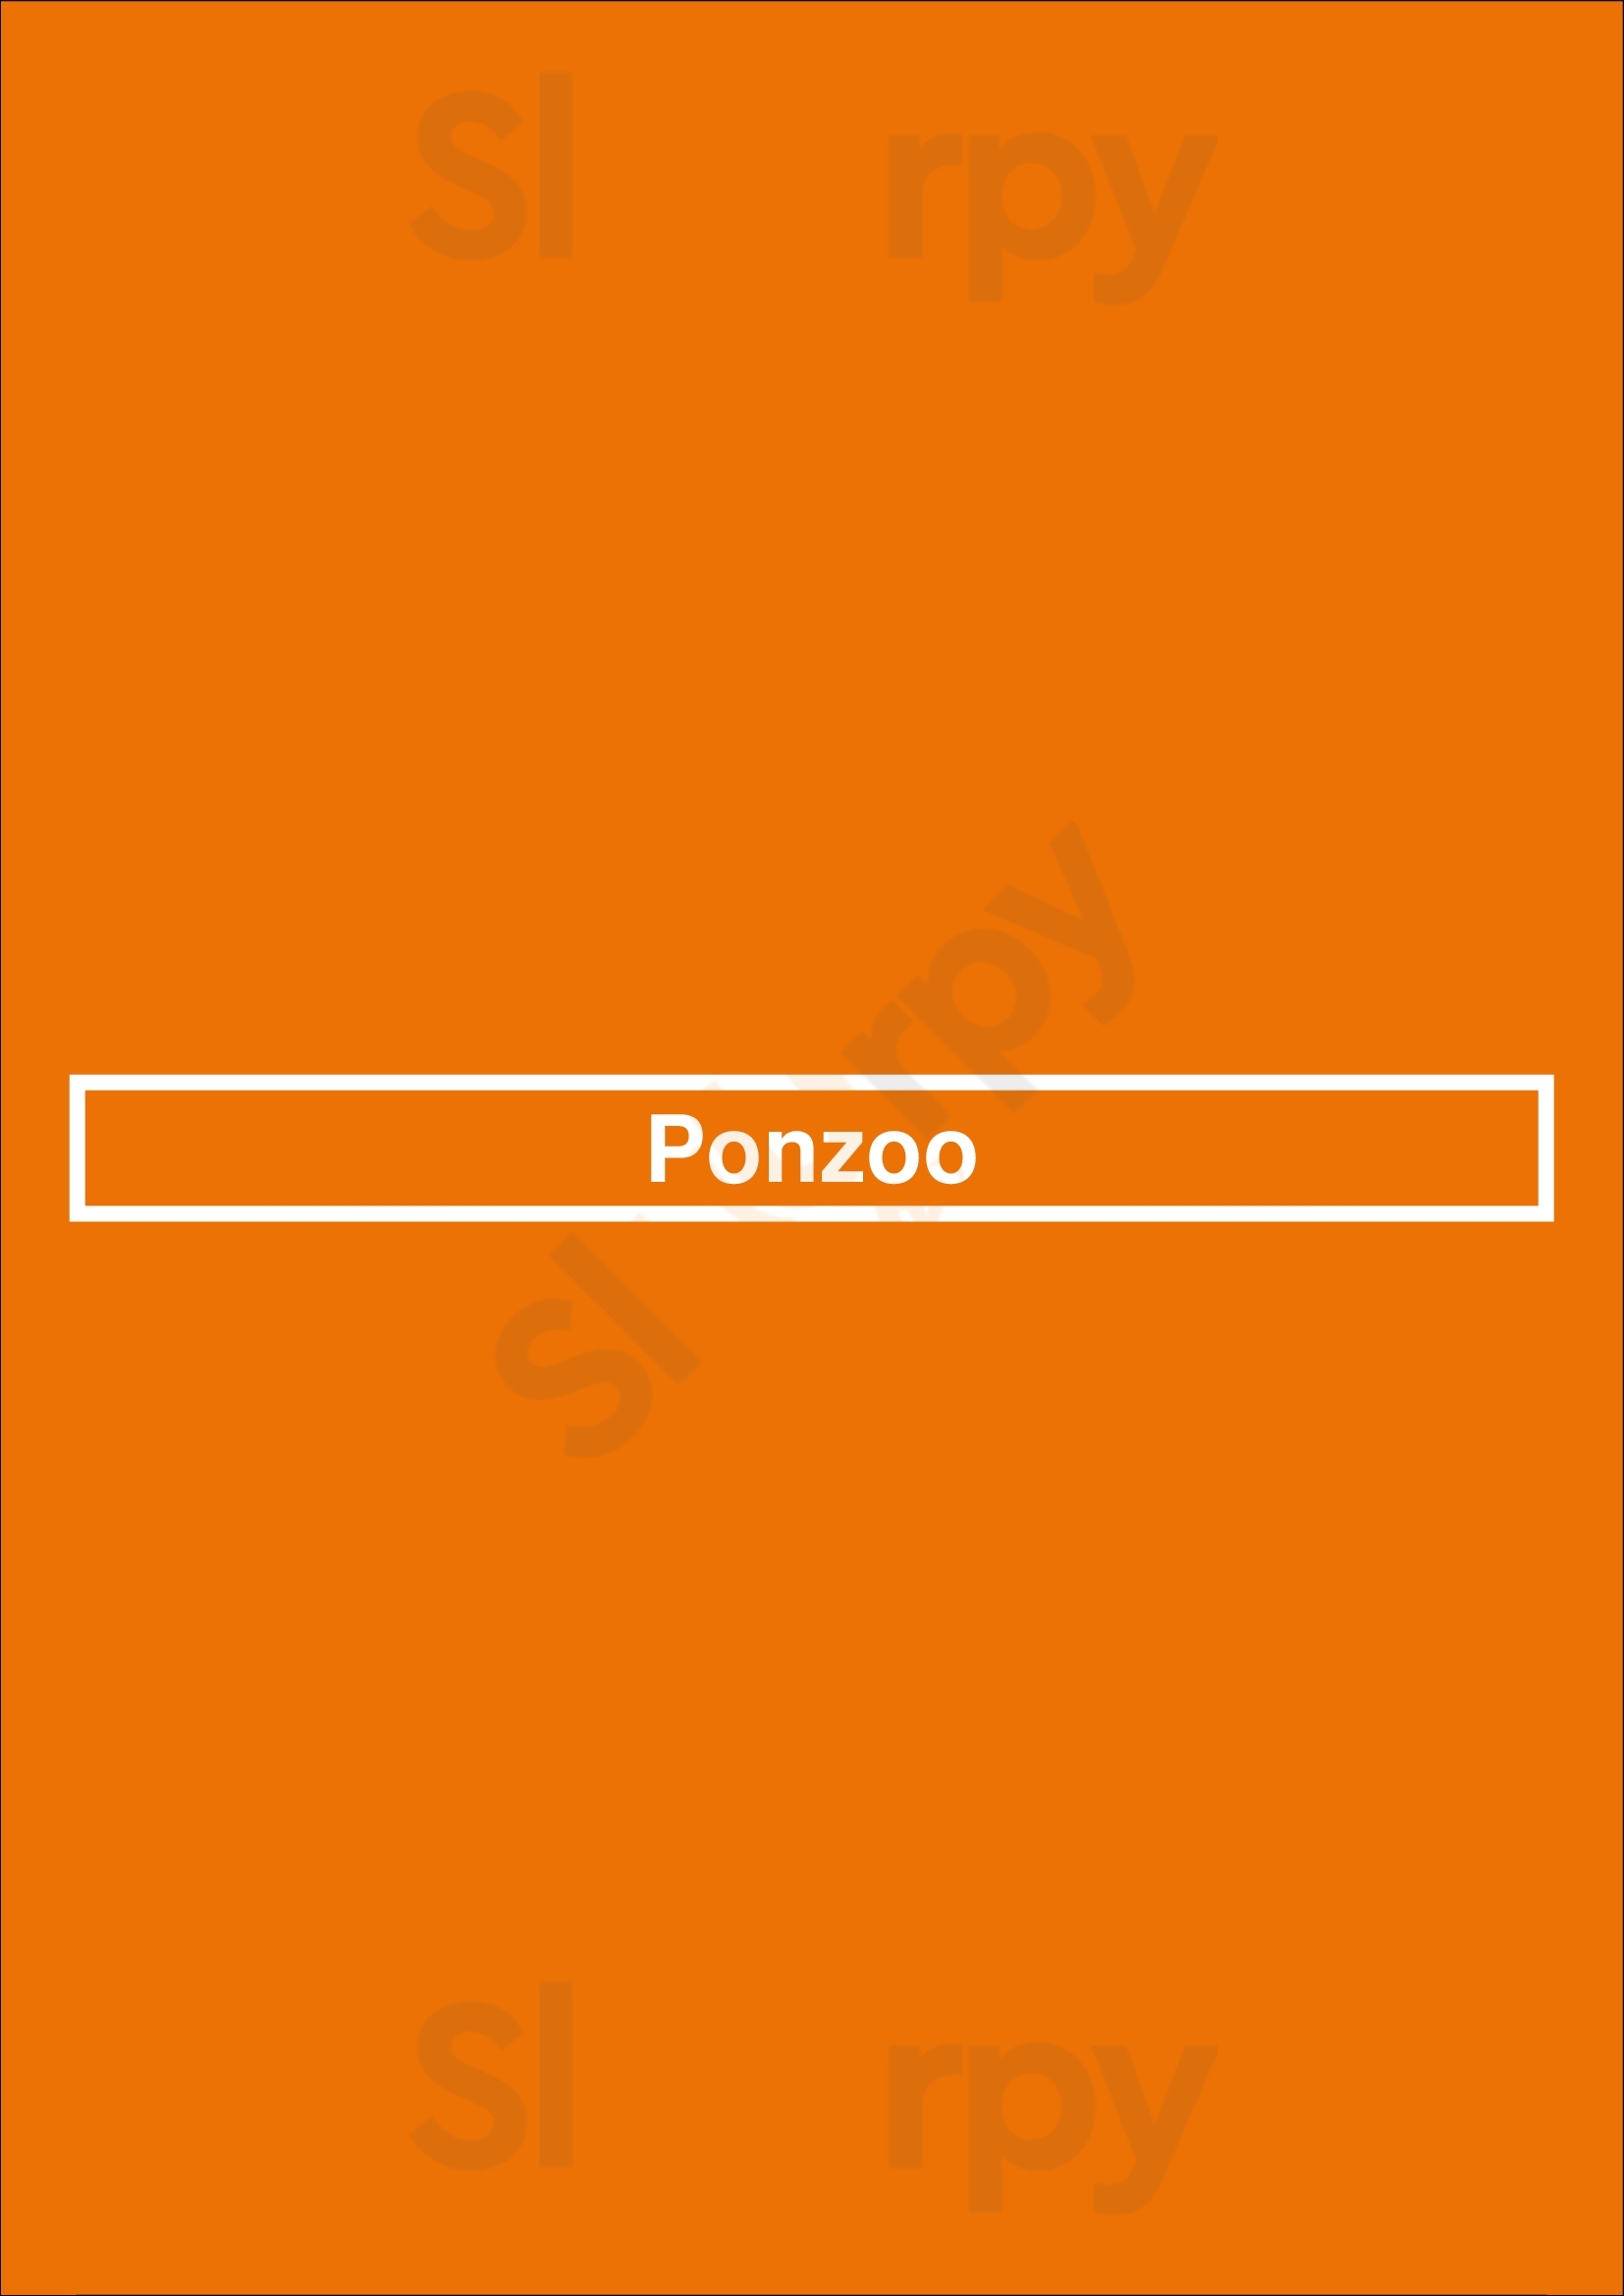 Ponzoo Sheerness Menu - 1